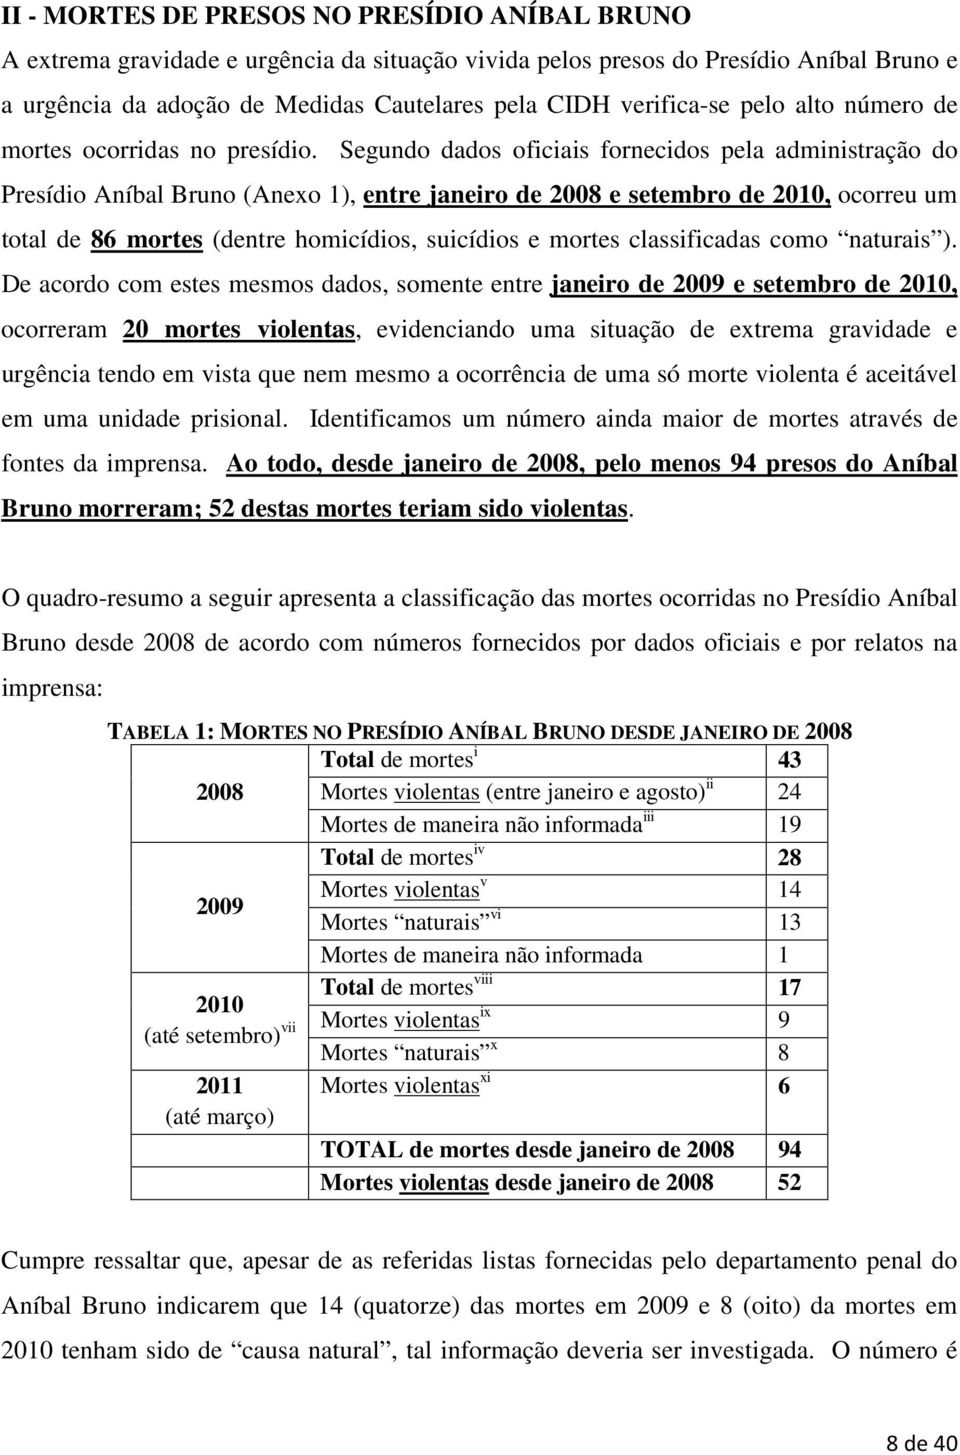 Segundo dados oficiais fornecidos pela administração do Presídio Aníbal Bruno (Anexo 1), entre janeiro de 2008 e setembro de 2010, ocorreu um total de 86 mortes (dentre homicídios, suicídios e mortes